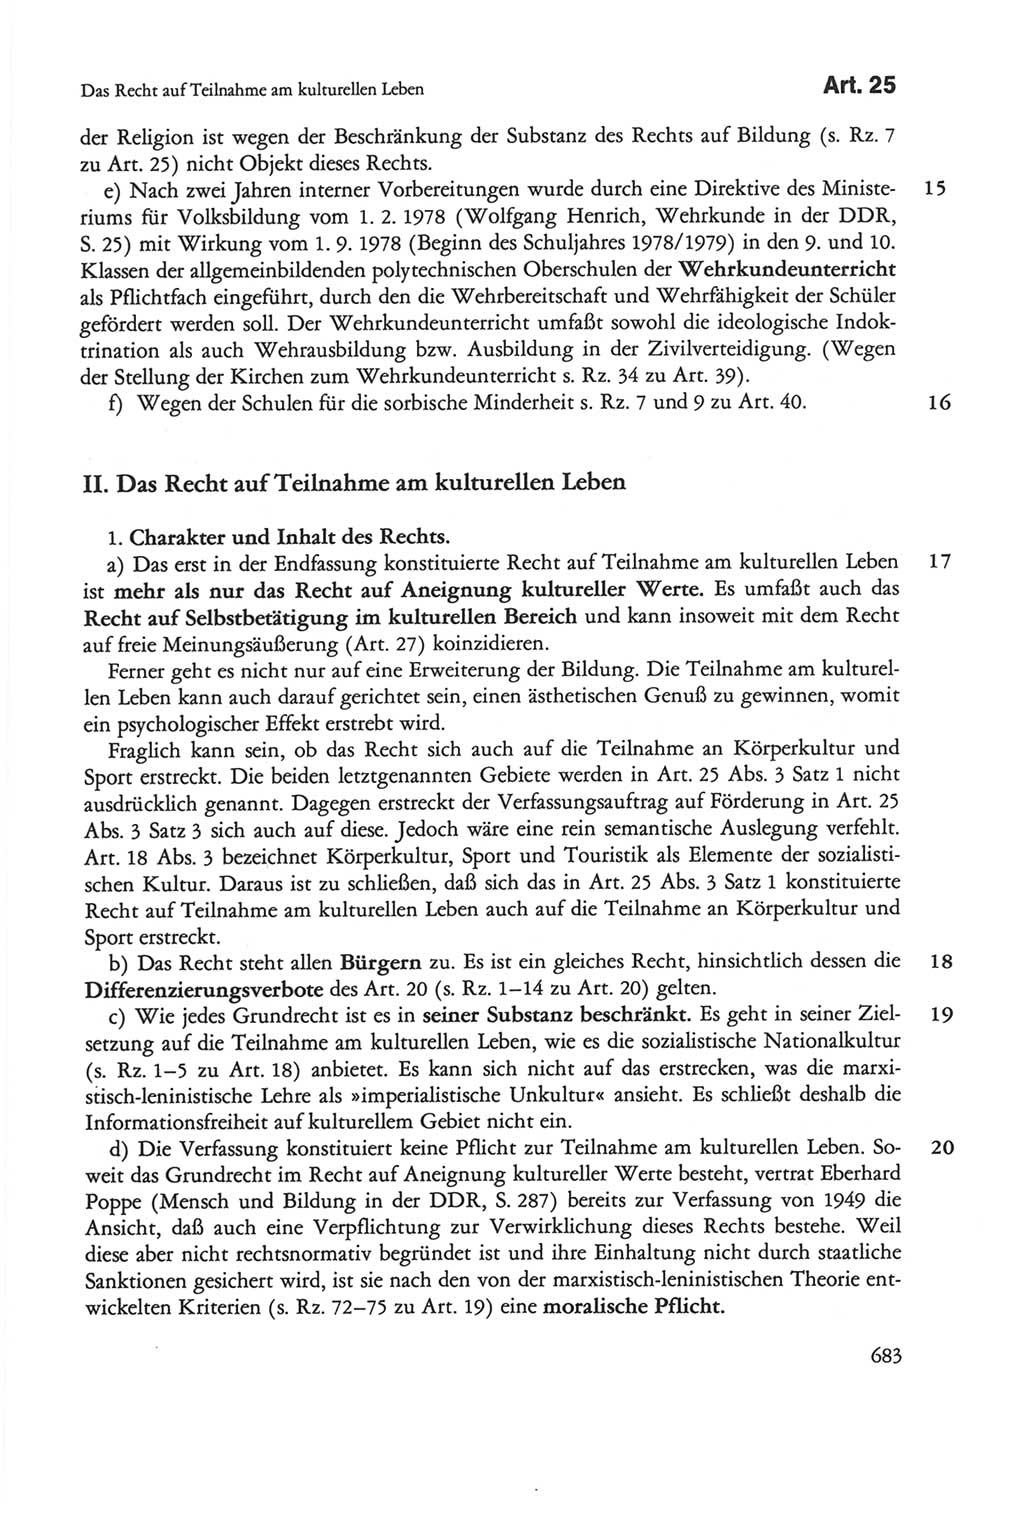 Die sozialistische Verfassung der Deutschen Demokratischen Republik (DDR), Kommentar mit einem Nachtrag 1997, Seite 683 (Soz. Verf. DDR Komm. Nachtr. 1997, S. 683)